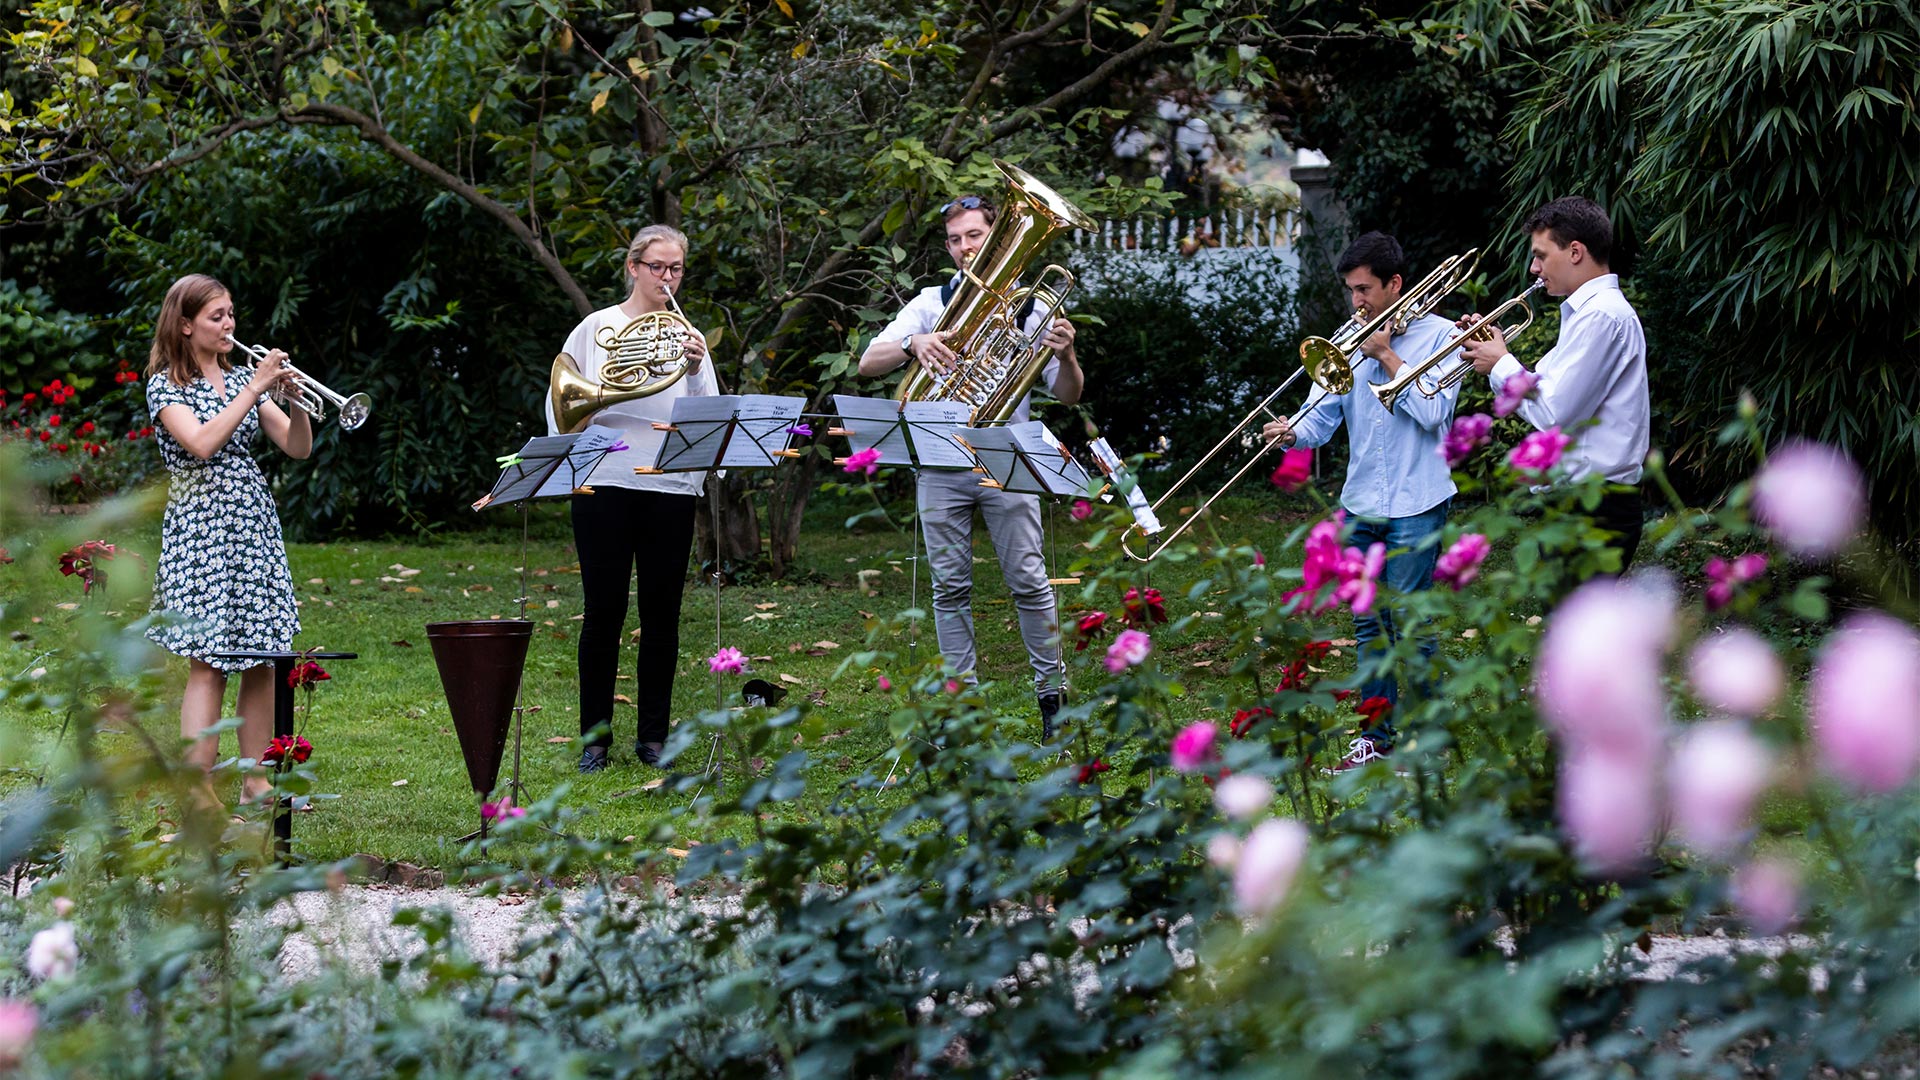 Banda musicale composta da cinque giovani suonano diversi strumenti a fiato sul prato di Bolzano in un pomeriggio d'estate.